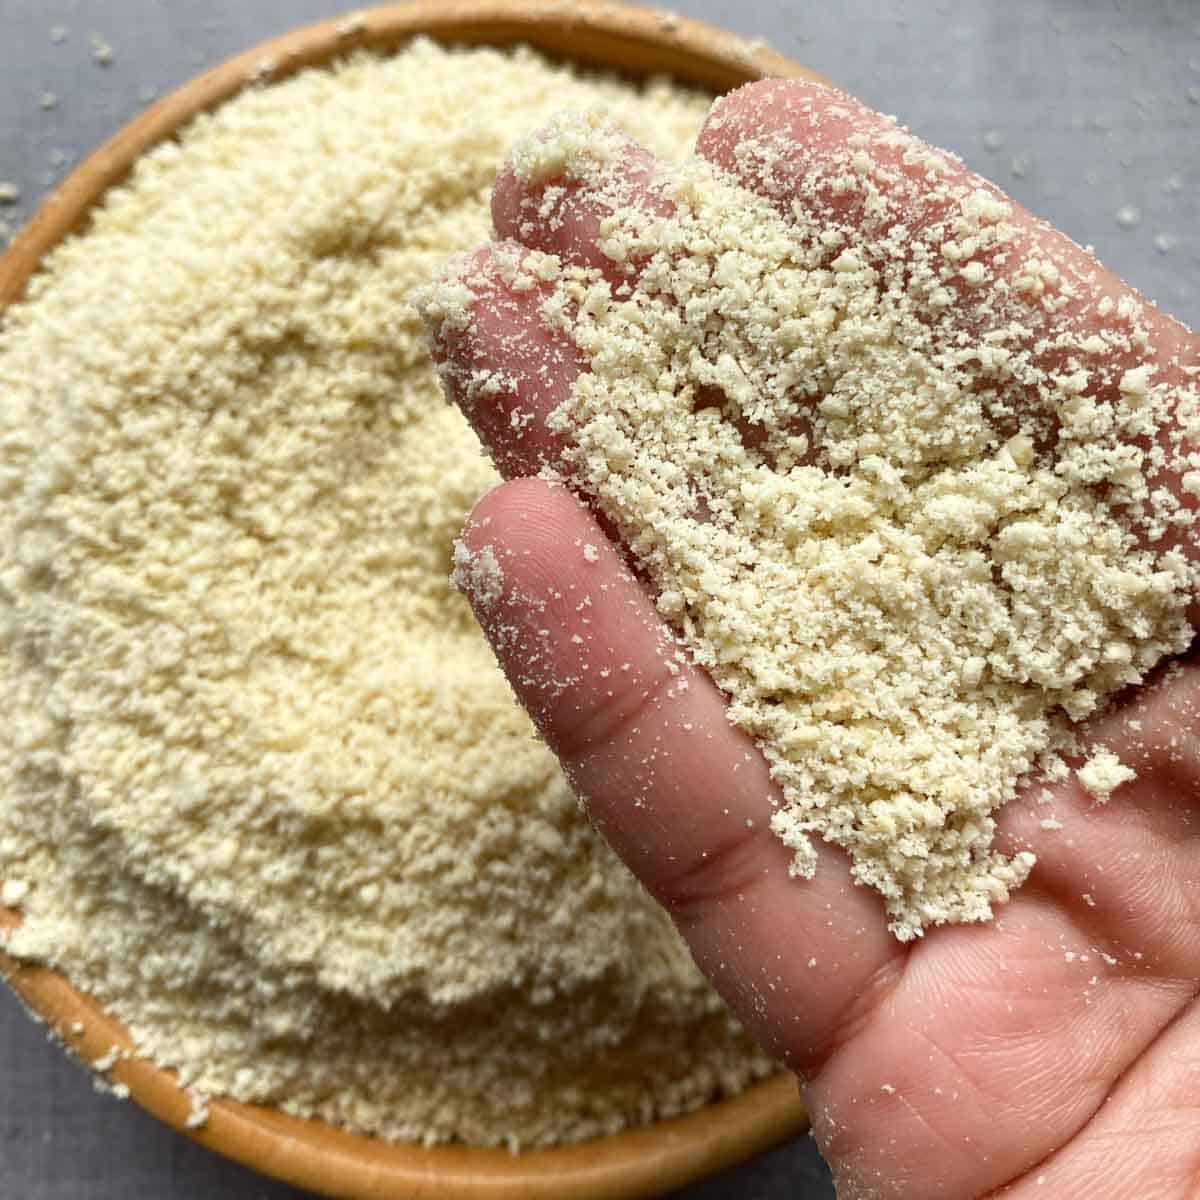 Cashew flour held in hands